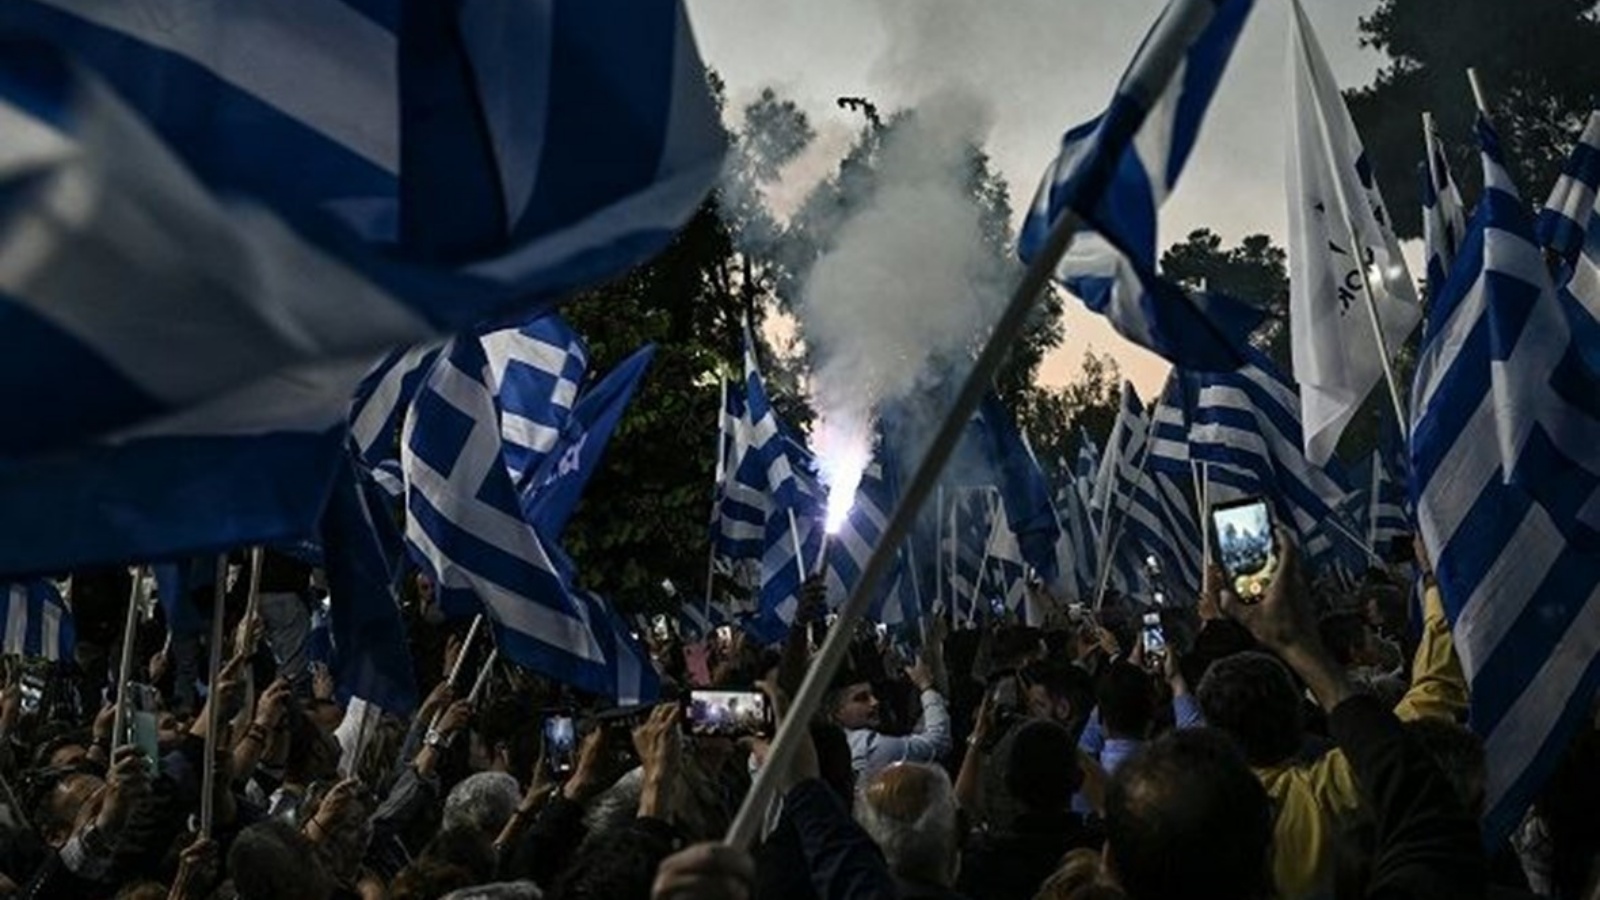 أنصار رئيس الوزراء اليوناني الحالي وزعيم حزب الديموقراطية الجديدة المحافظ يلوحون بالأعلام اليونانية